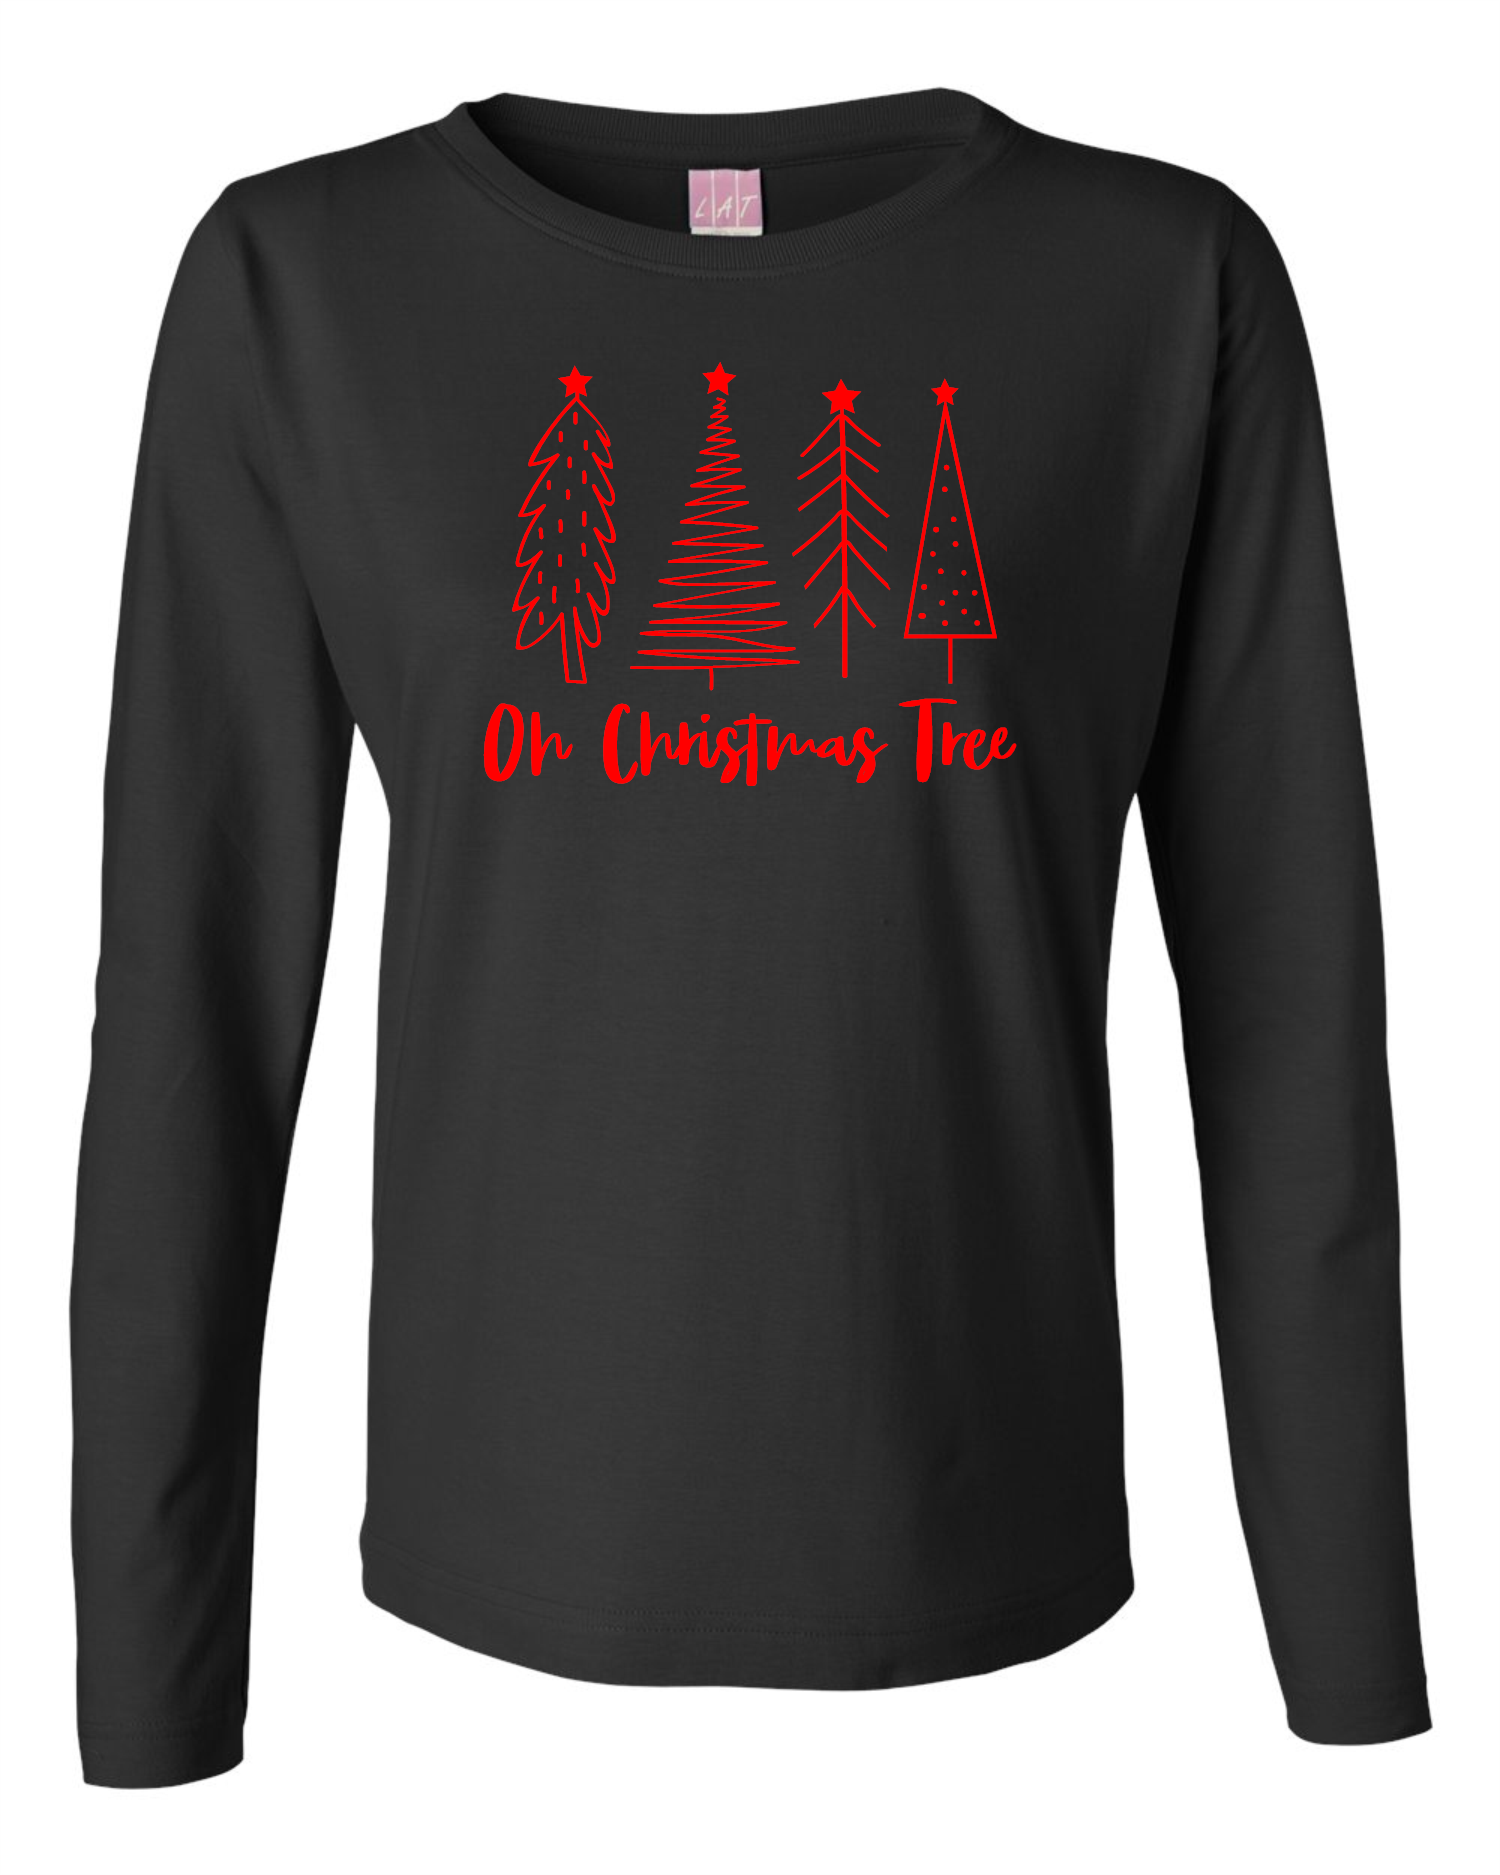 Oh Christmas Tree Ladies L/S Tee Ladies Long Sleeve Shirt by Akron Pride Custom Tees | Akron Pride Custom Tees